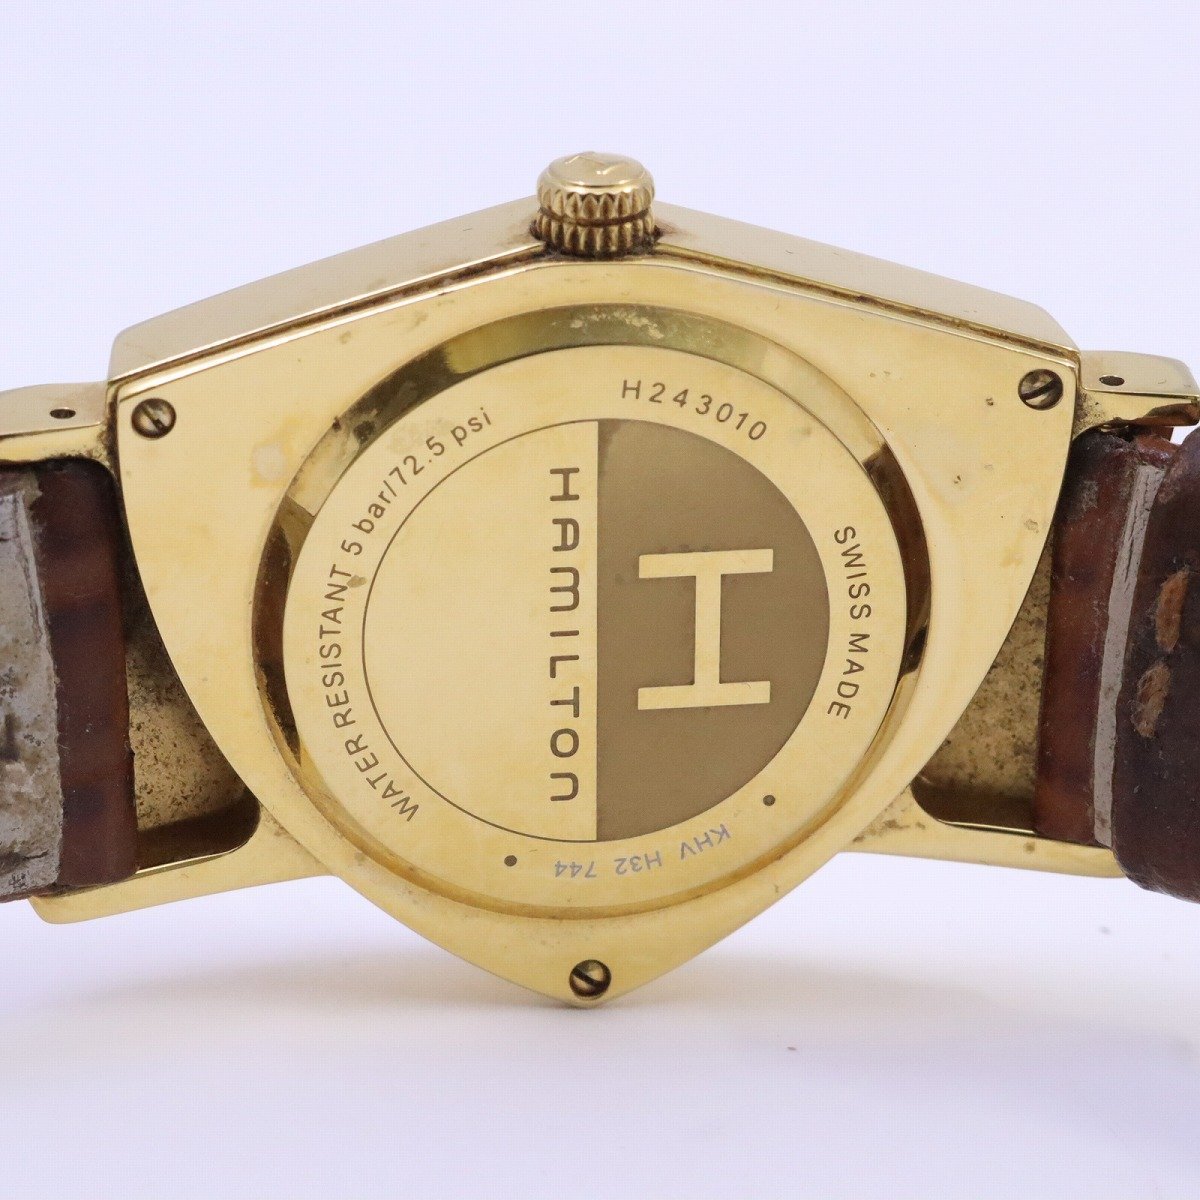 ハミルトン ベンチュラ クォーツ メンズ 腕時計 ゴールドGP 白文字盤 赤針 純正革ベルト H243010【いおき質店】_画像10